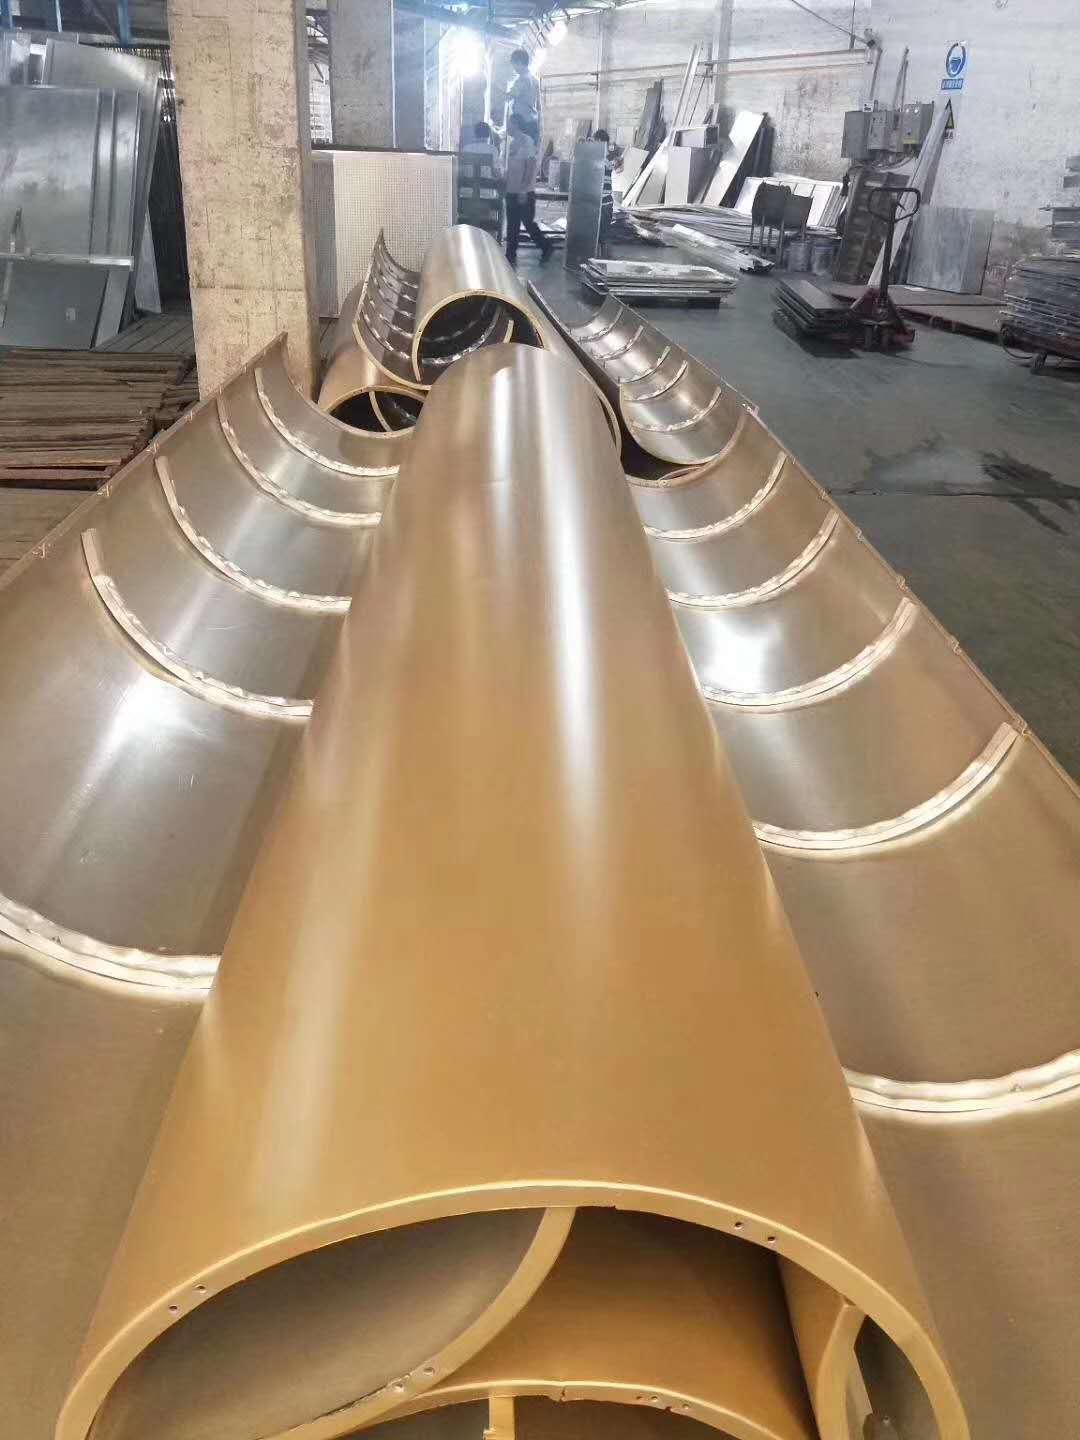 专业生产氟碳铝单板 木纹铝单板 造型铝单板 弧形铝单板 冲孔铝单板厂家直销